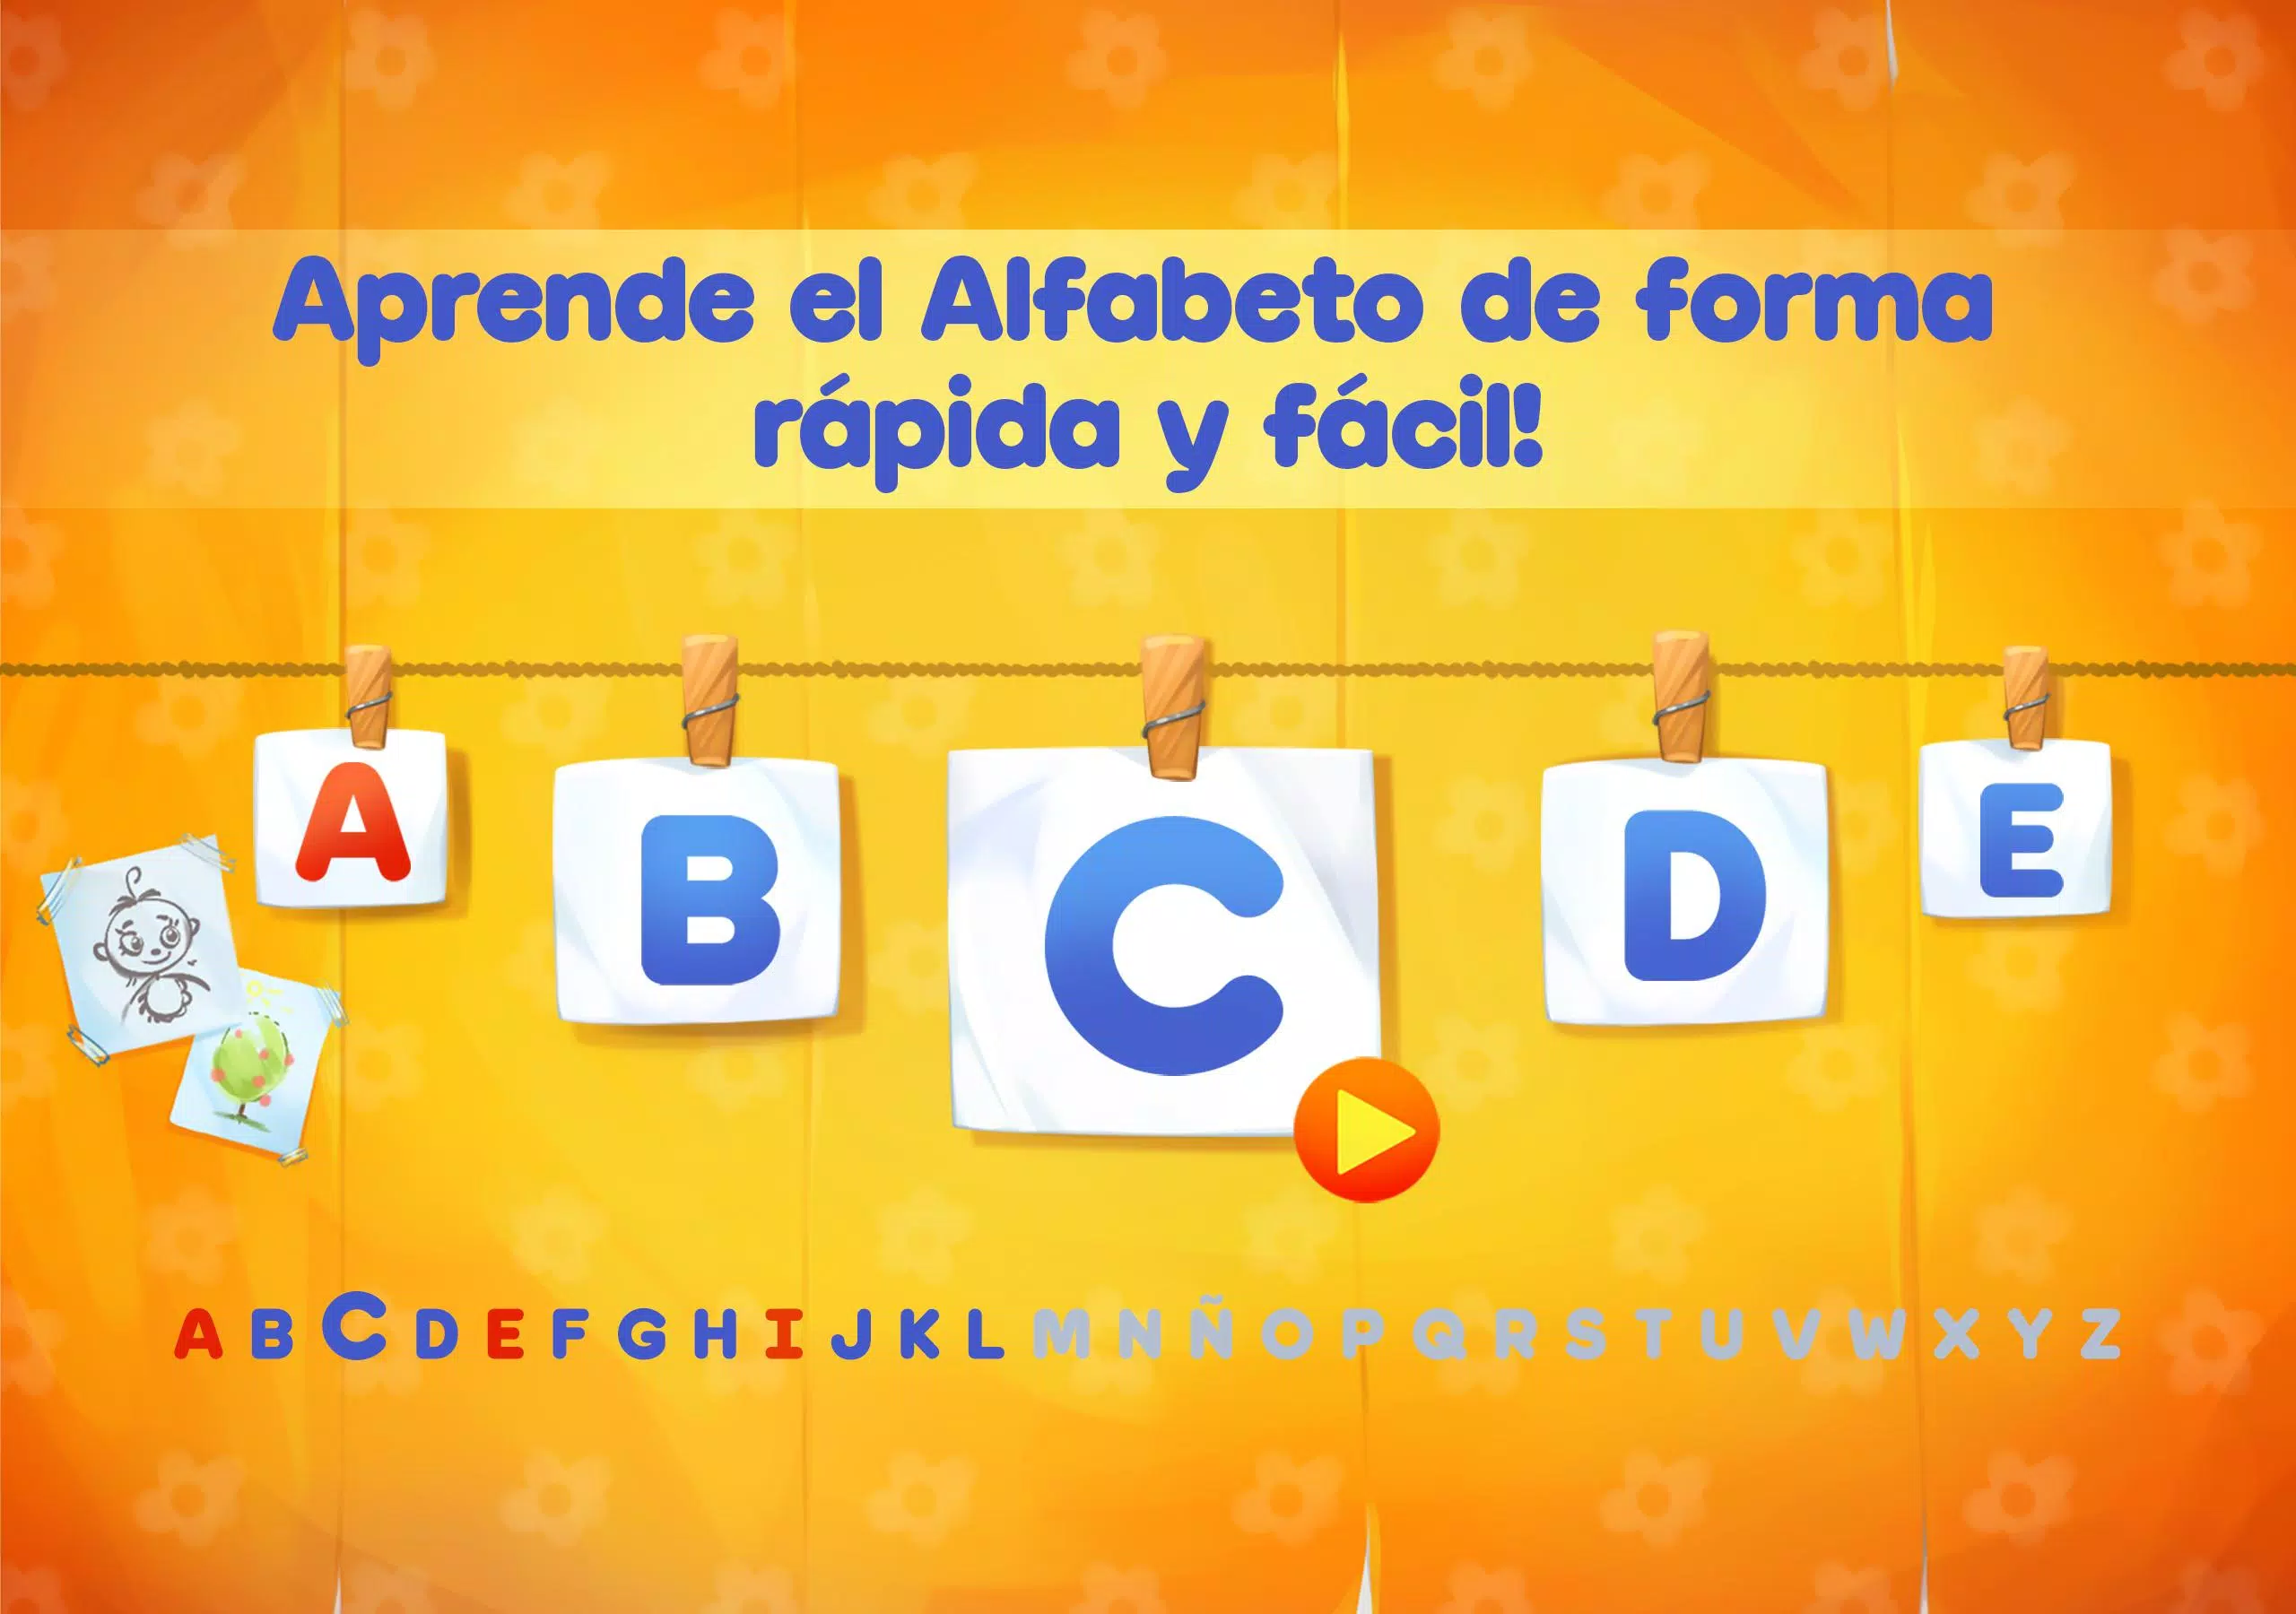 Alfabeto para niños: aprender letras abecedario for Android - APK Download